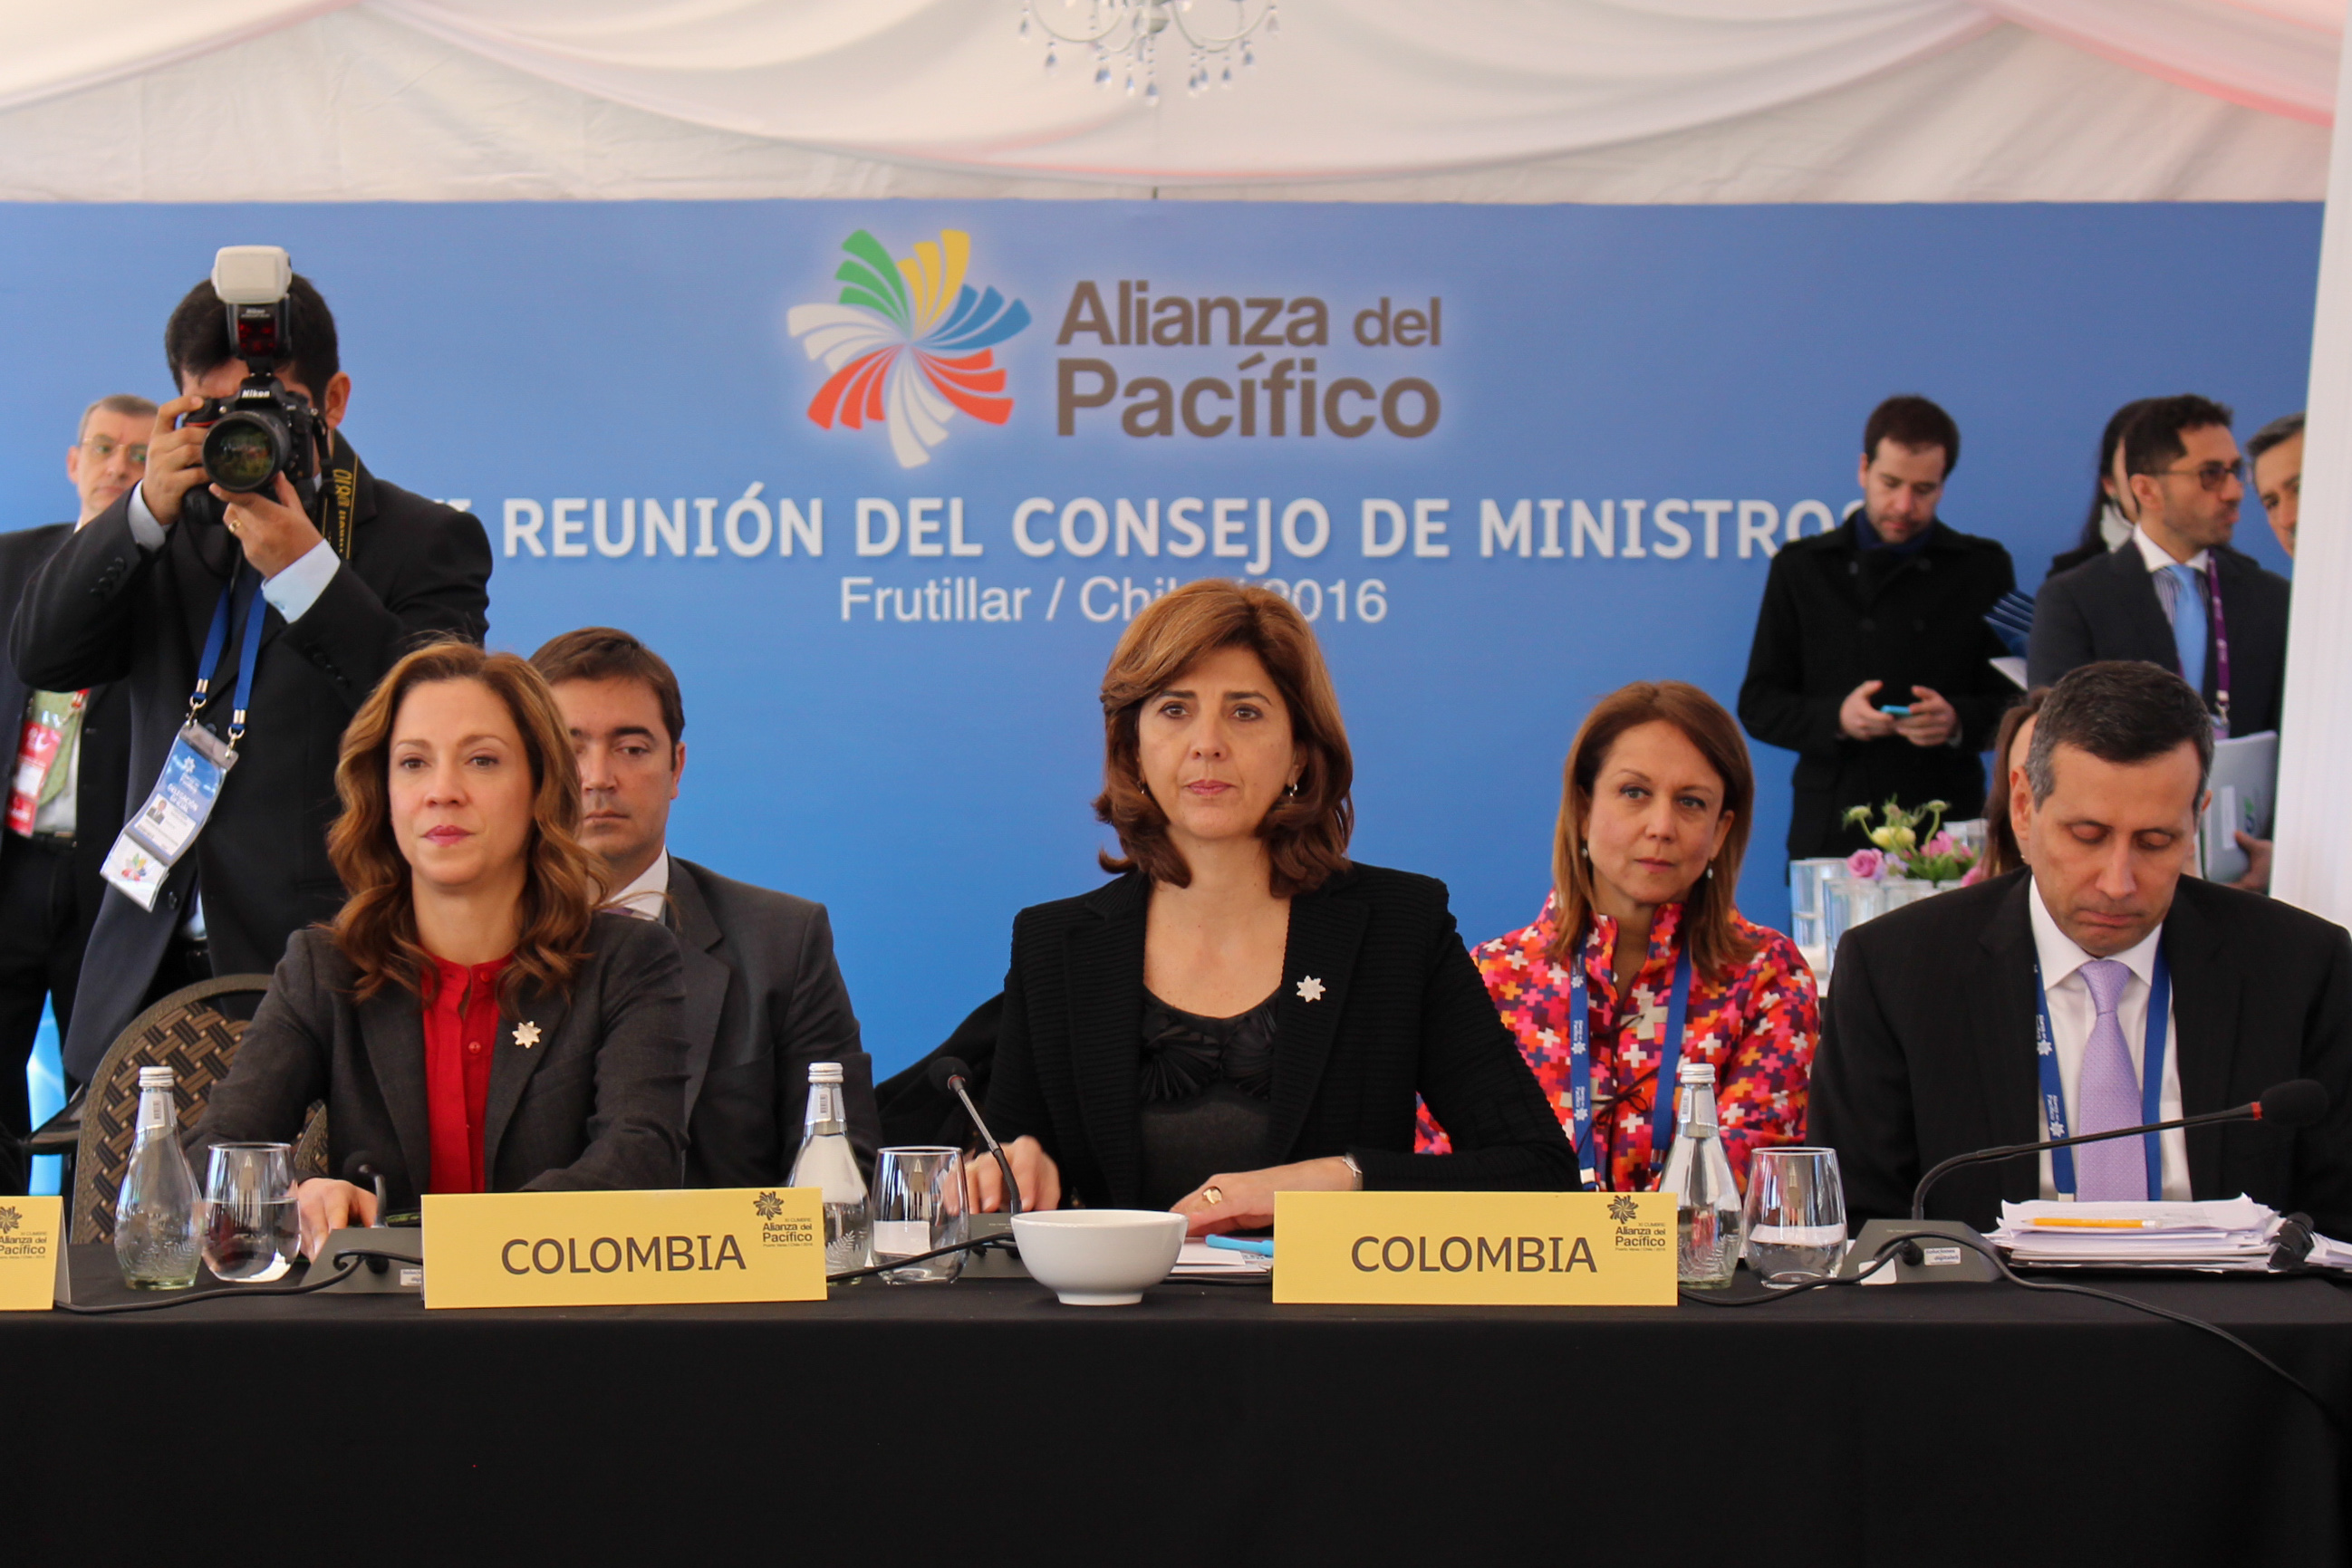 Alt: Canciller María Ángela Holguín participó en la reunión del consejo de Ministros de la Alianza del Pacífico